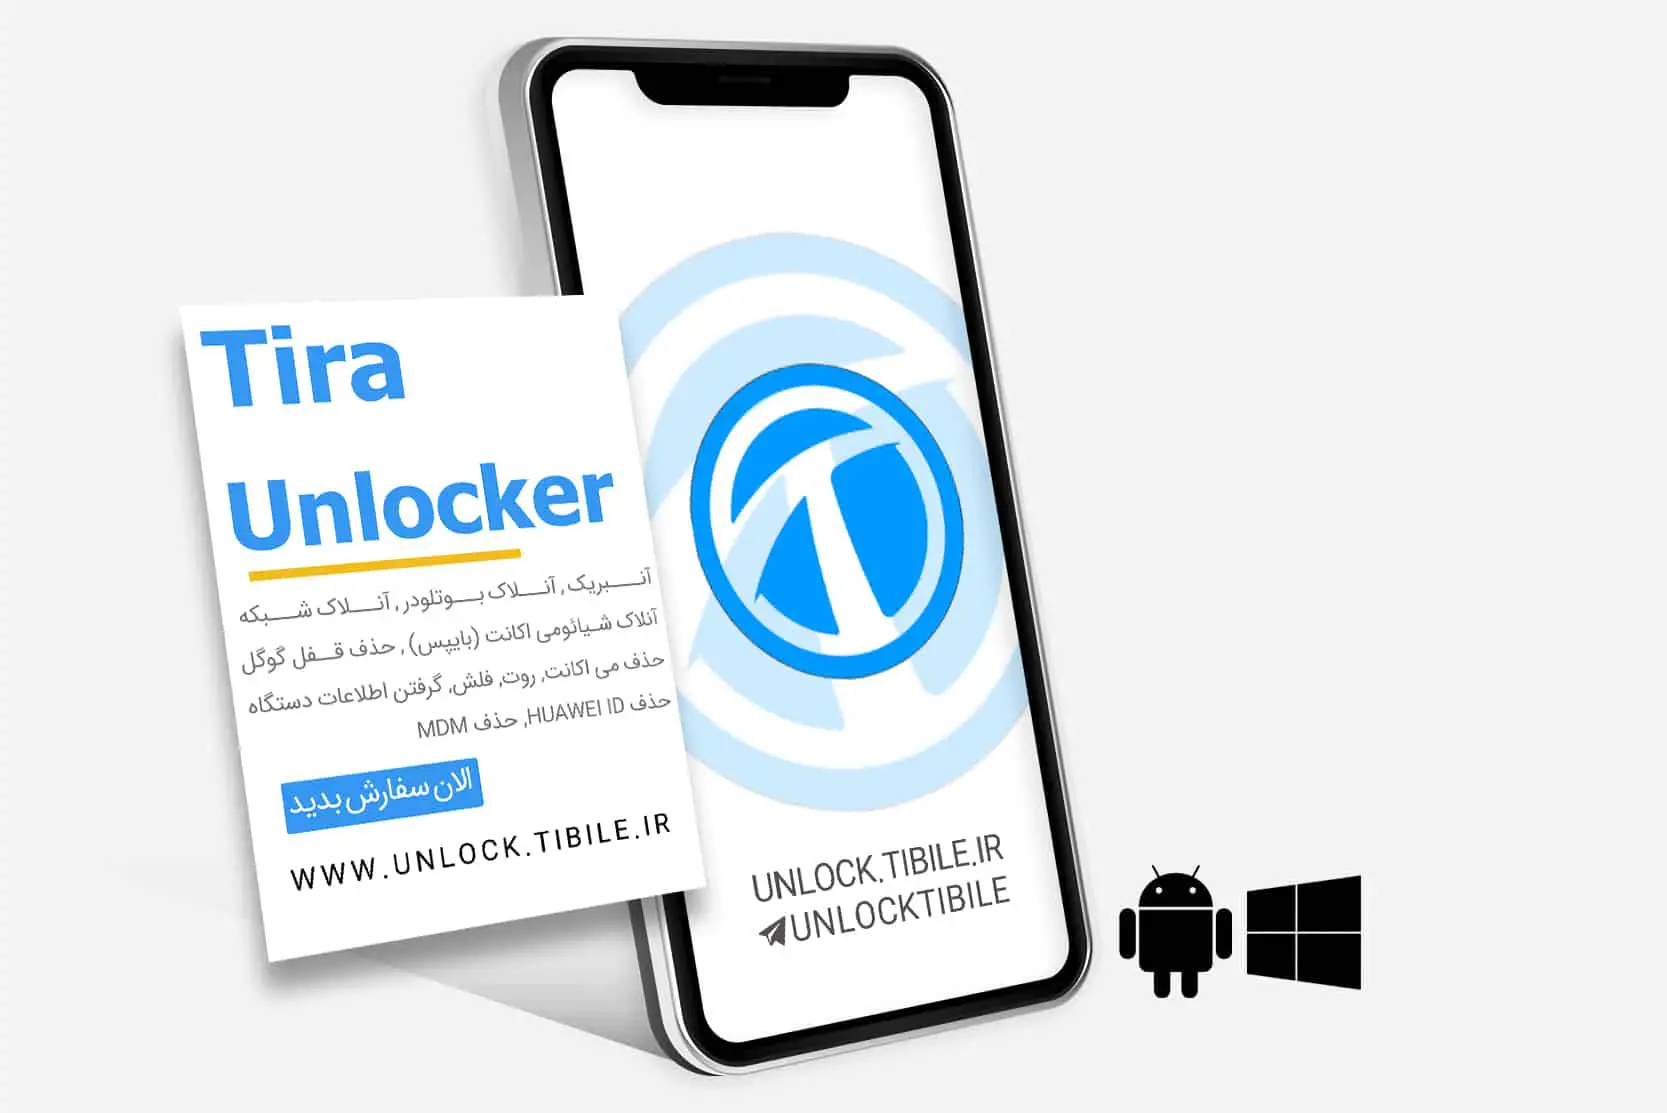 Tira Unlocker